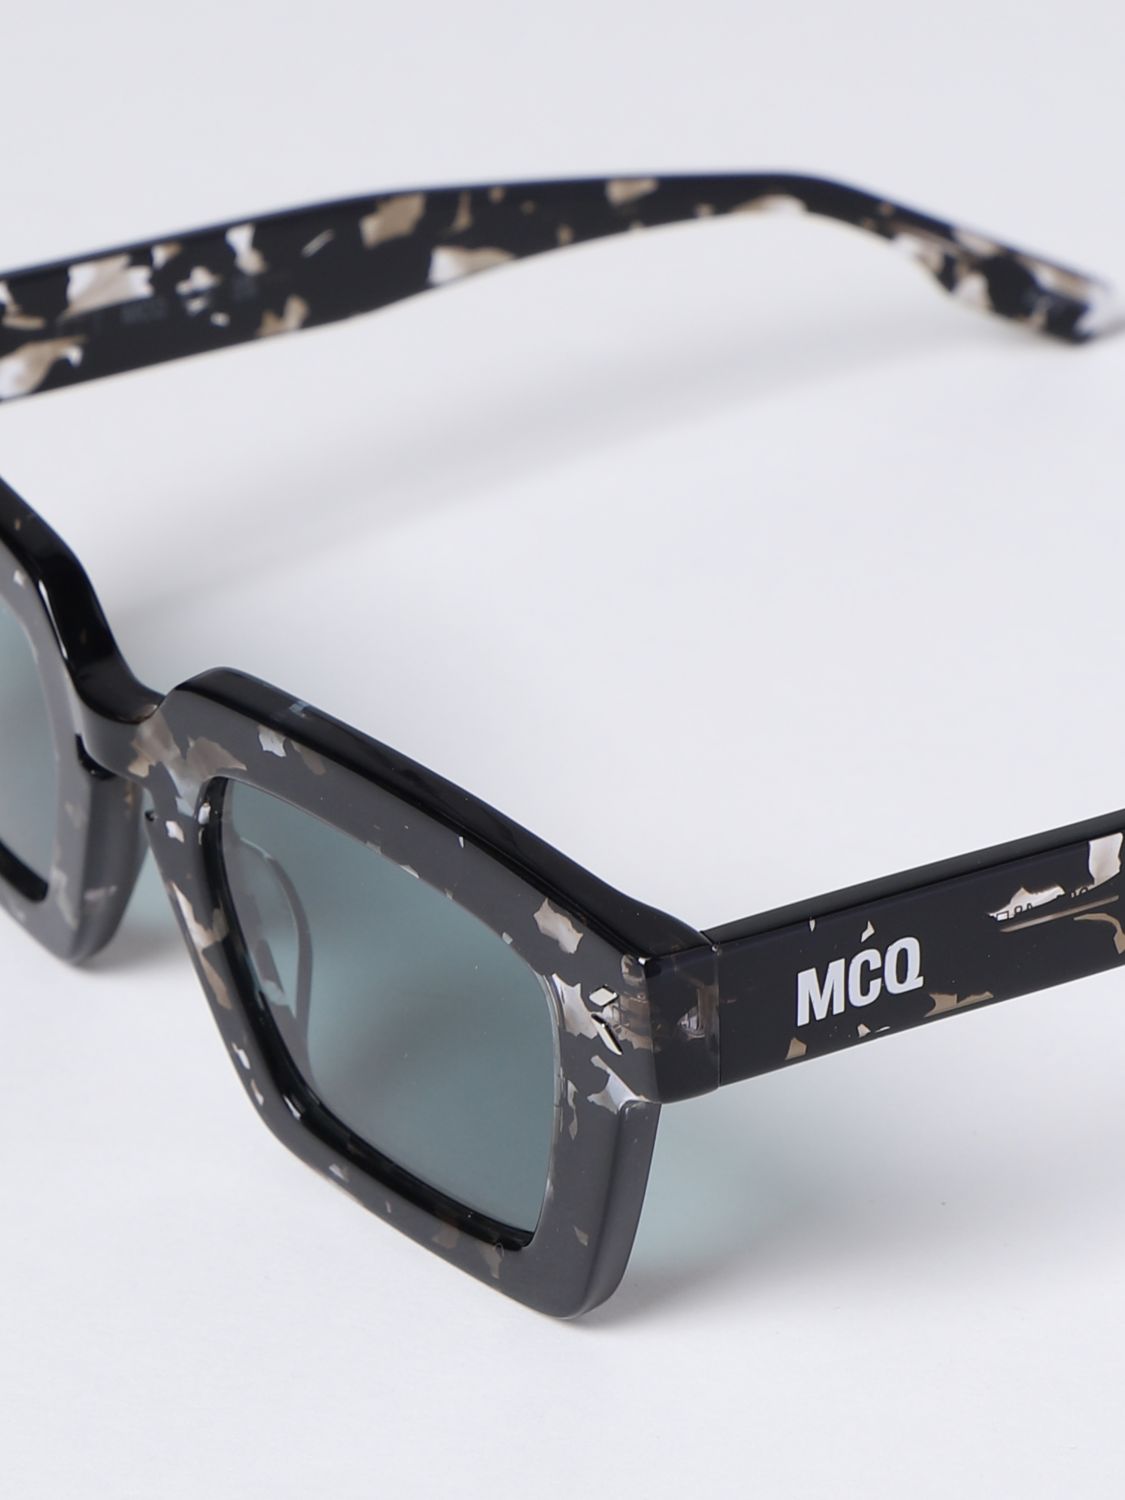 Sunglasses Mcq: Mcq sunglasses for woman grey 4